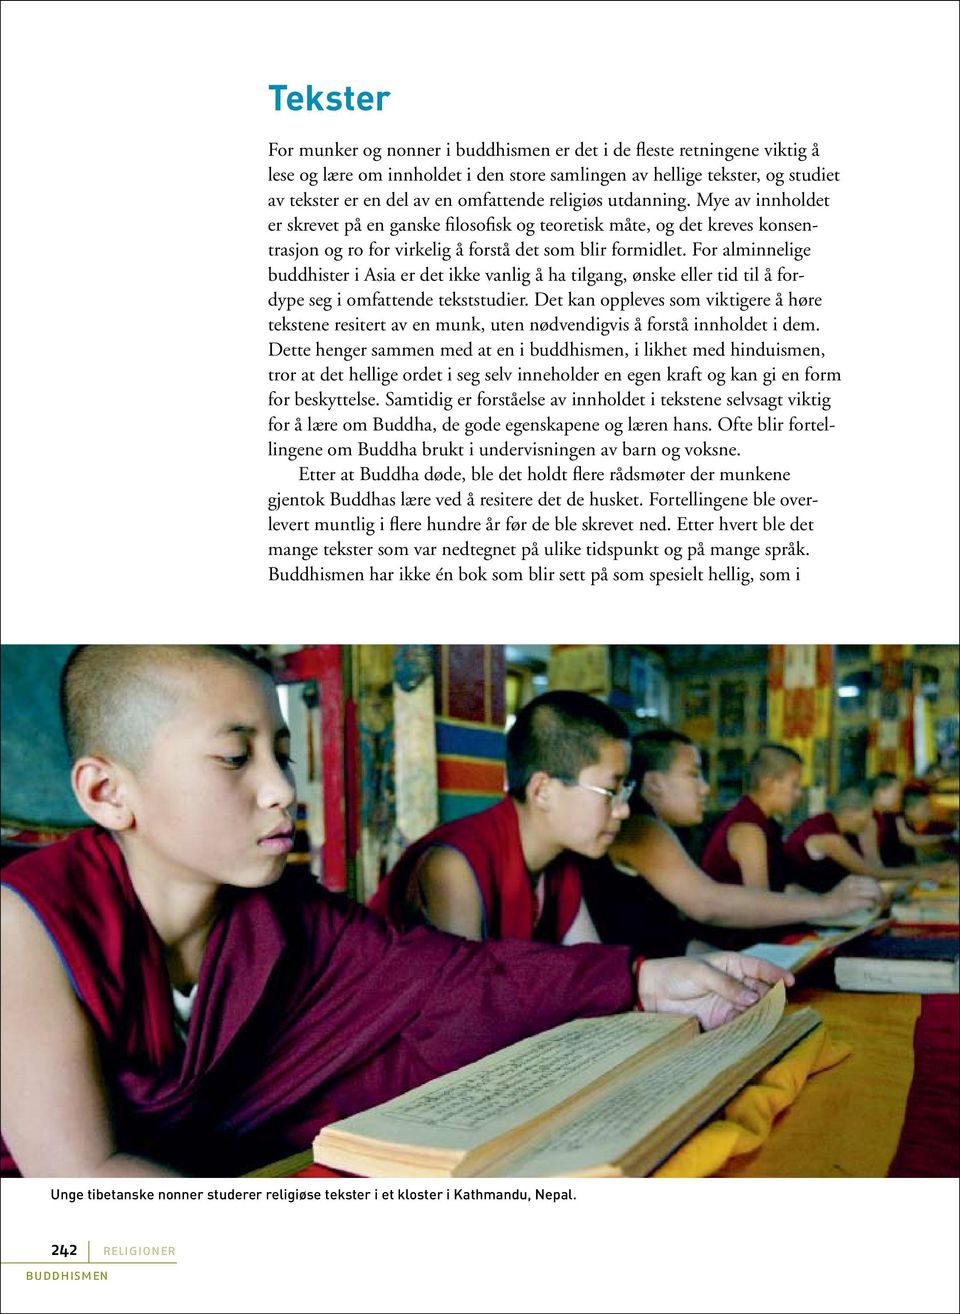 For alminnelige buddhister i Asia er det ikke vanlig å ha tilgang, ønske eller tid til å fordype seg i omfattende tekststudier.